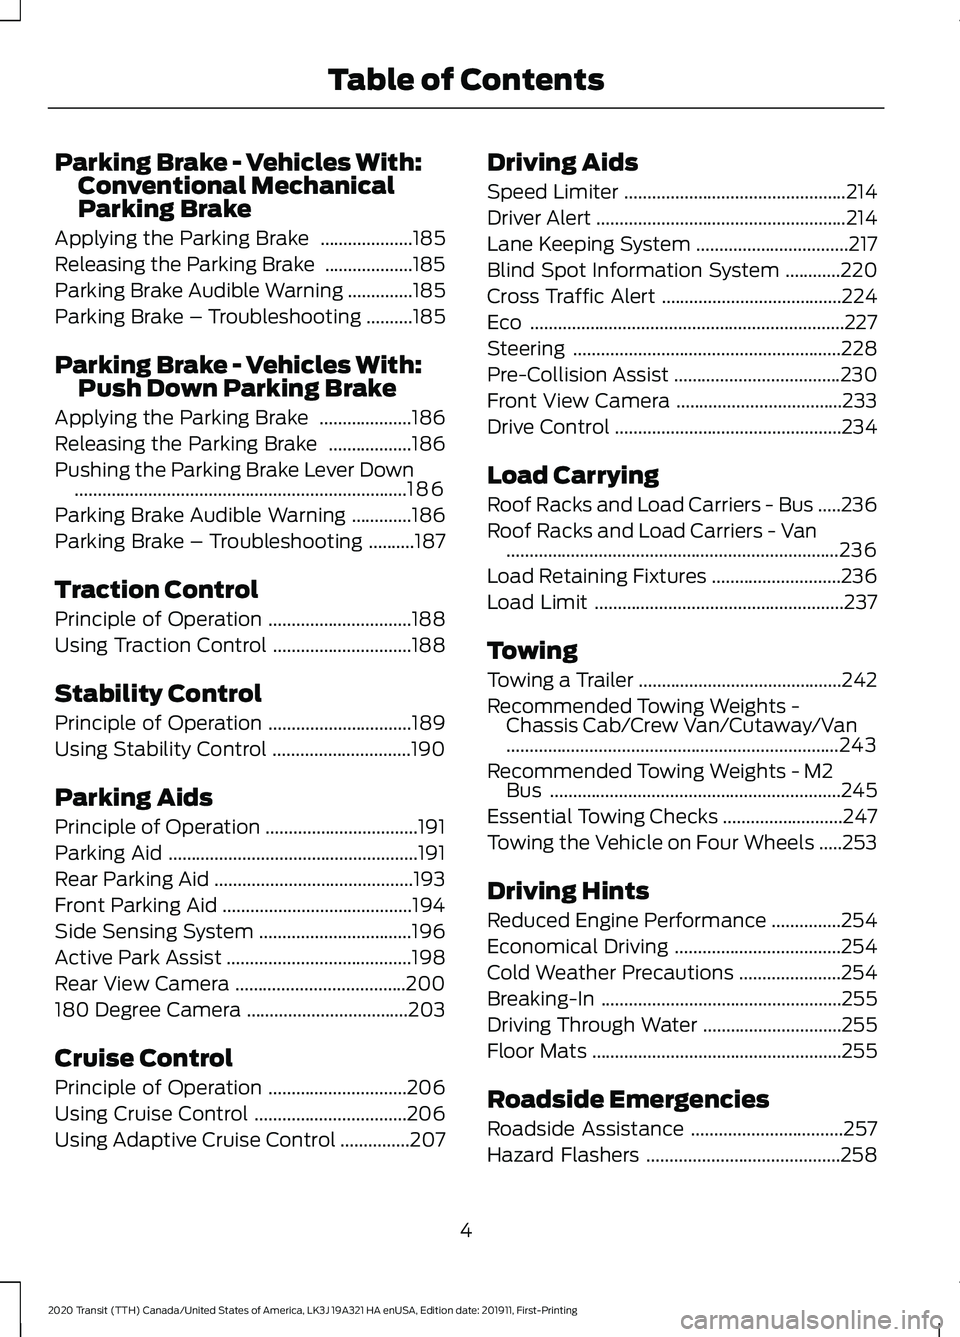 FORD TRANSIT 2020  Owners Manual Parking Brake - Vehicles With:
Conventional Mechanical
Parking Brake
Applying the Parking Brake  ....................185
Releasing the Parking Brake  ...................
185
Parking Brake Audible Warn